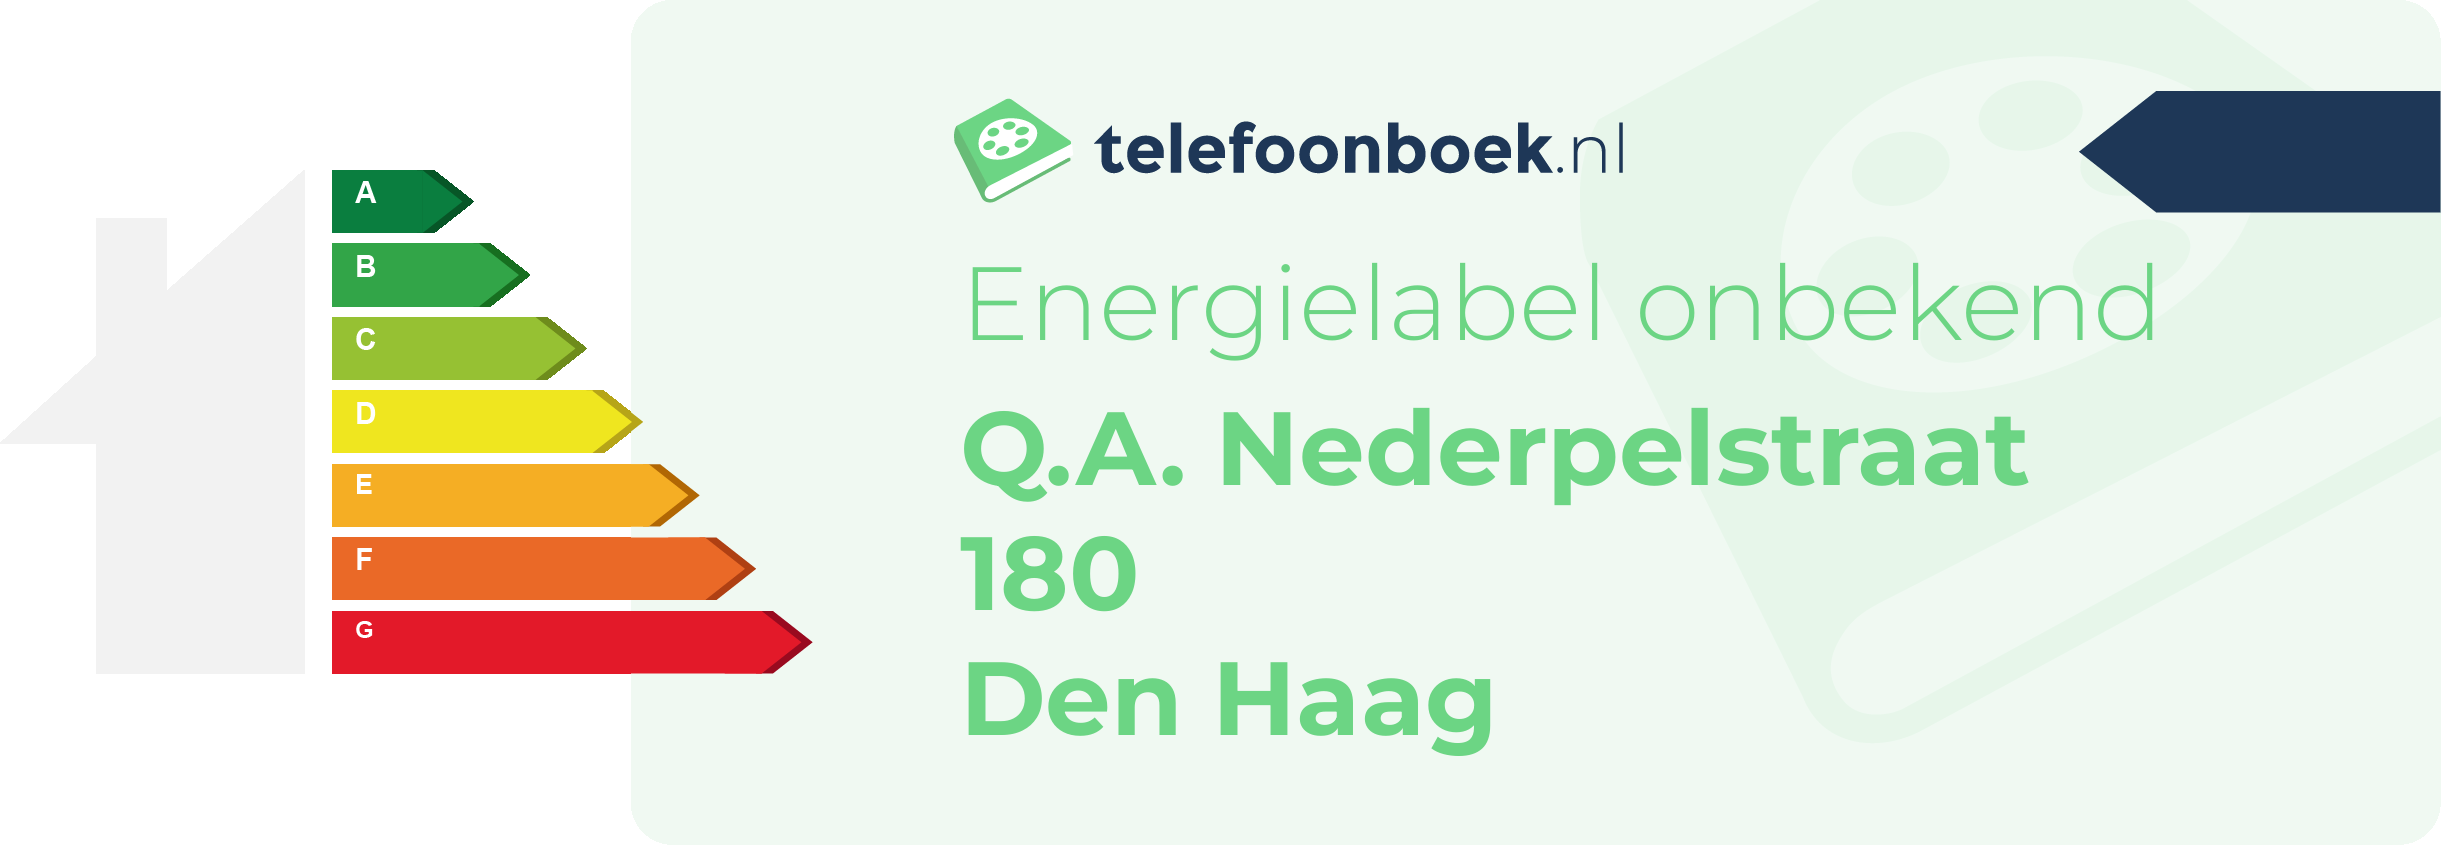 Energielabel Q.A. Nederpelstraat 180 Den Haag